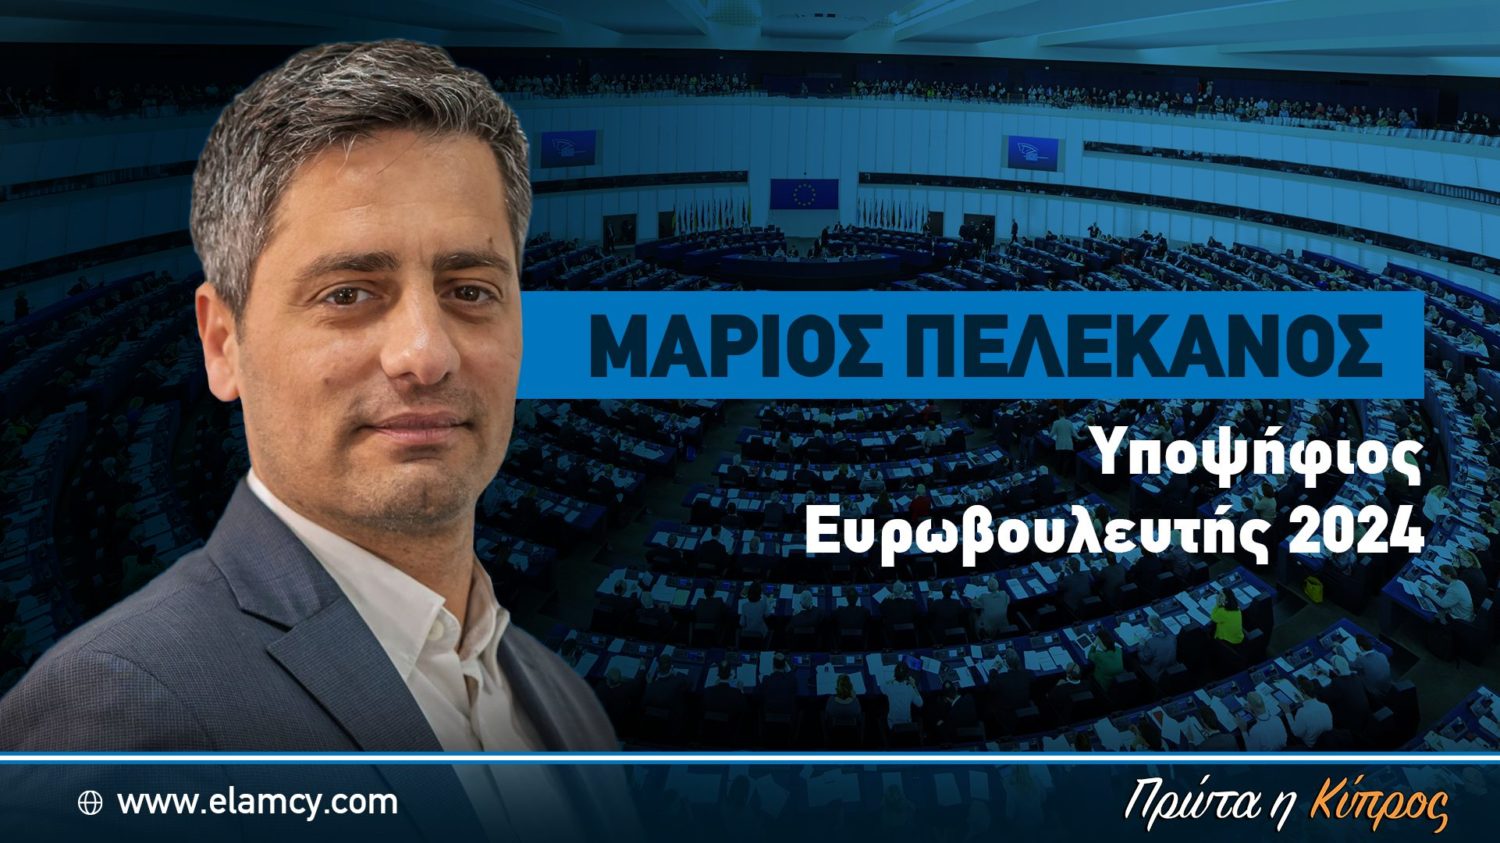 Баннер выборы в евро Мариос Пелеканос